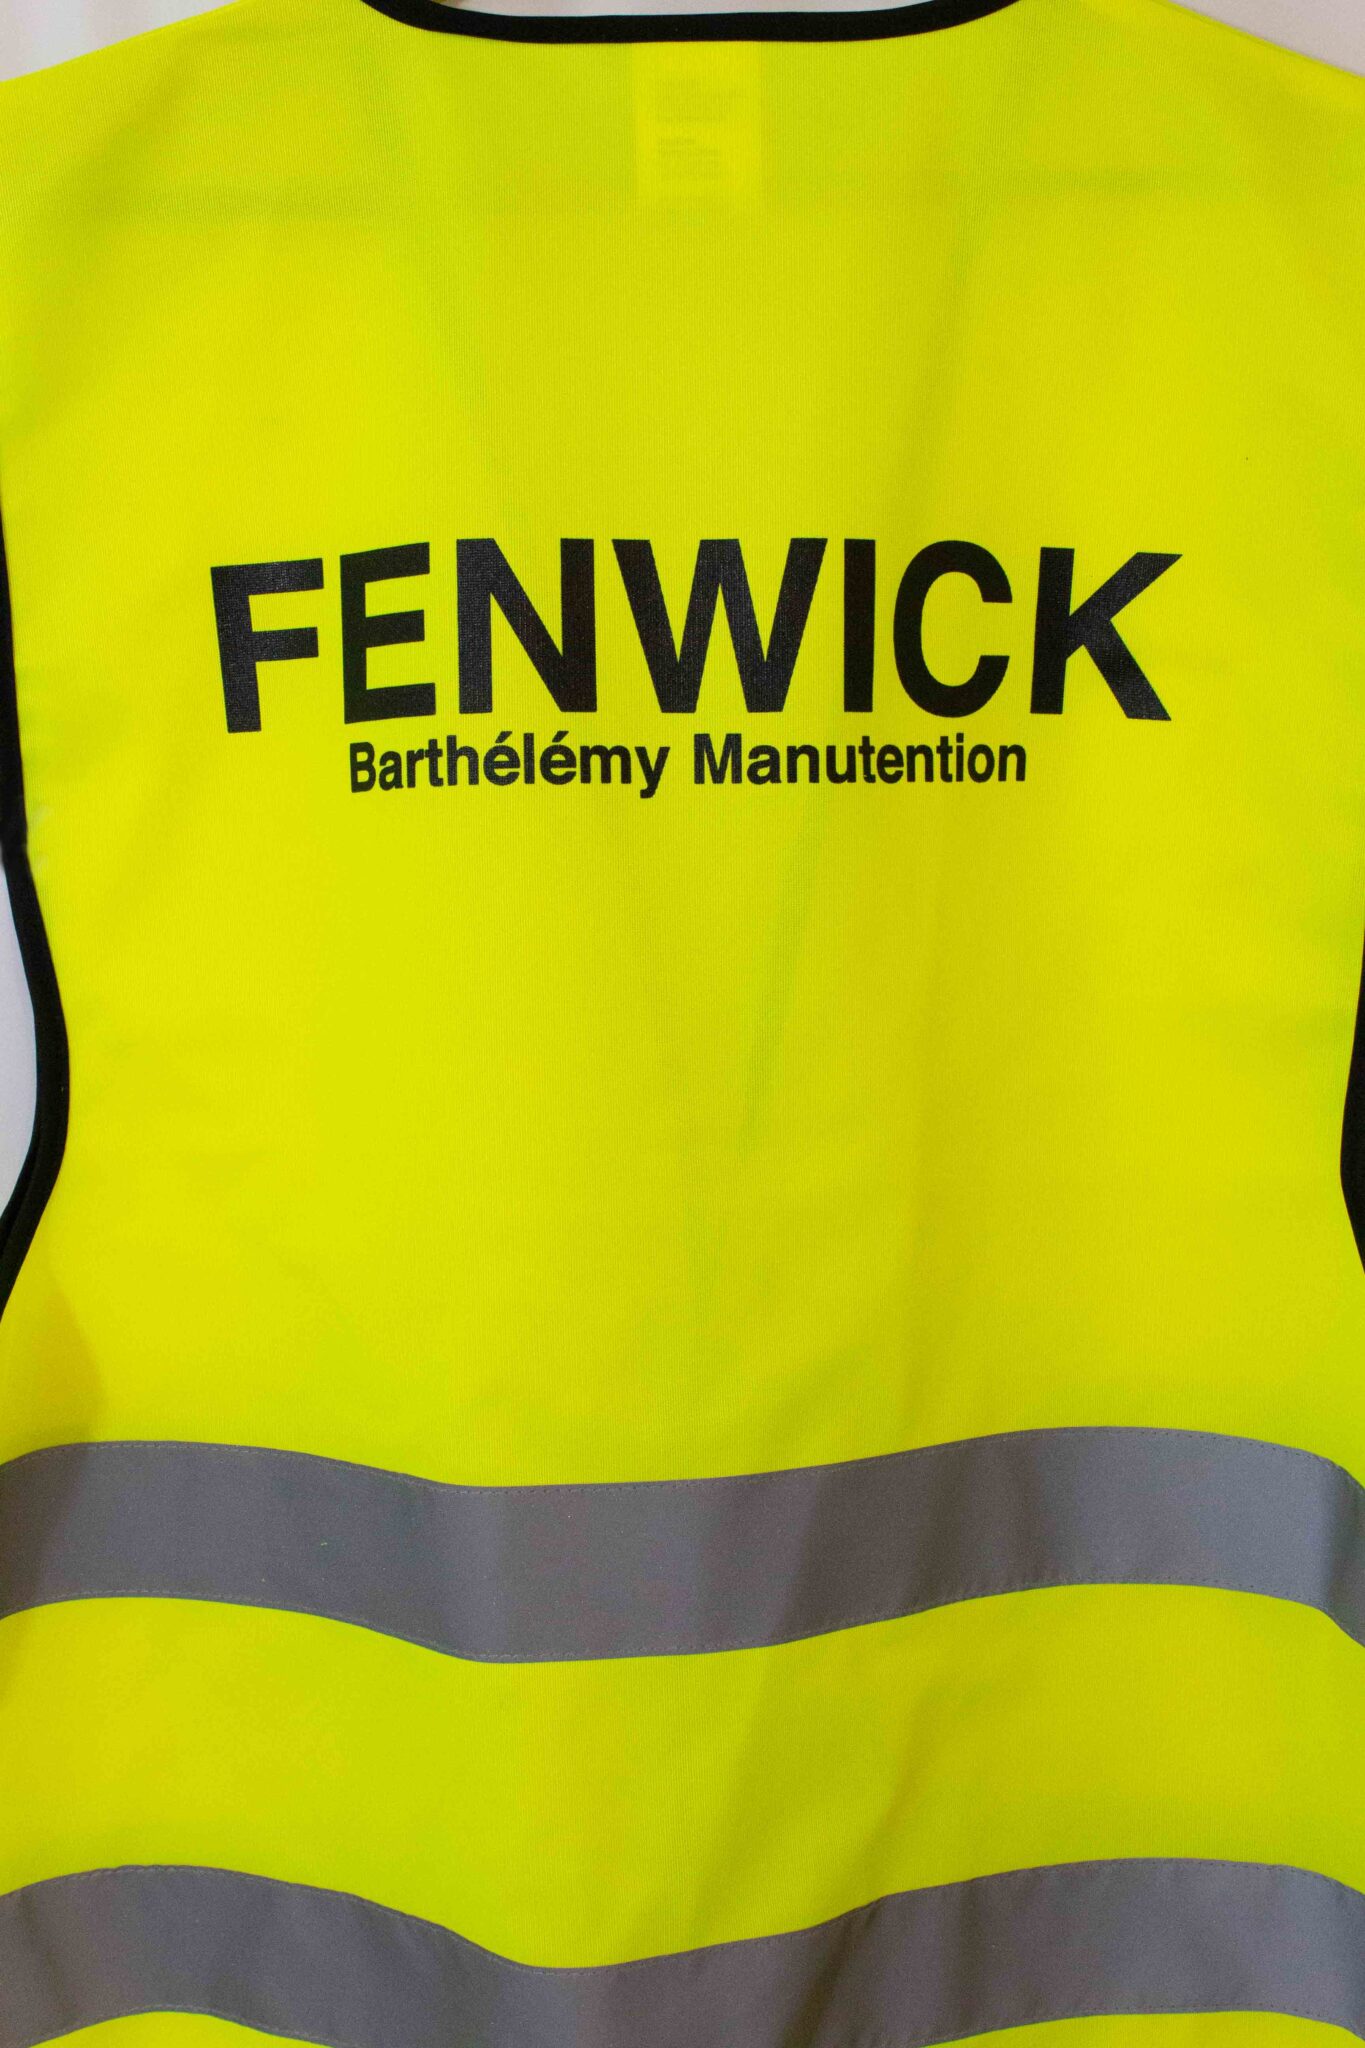 barthélémy manutention fenwick 6